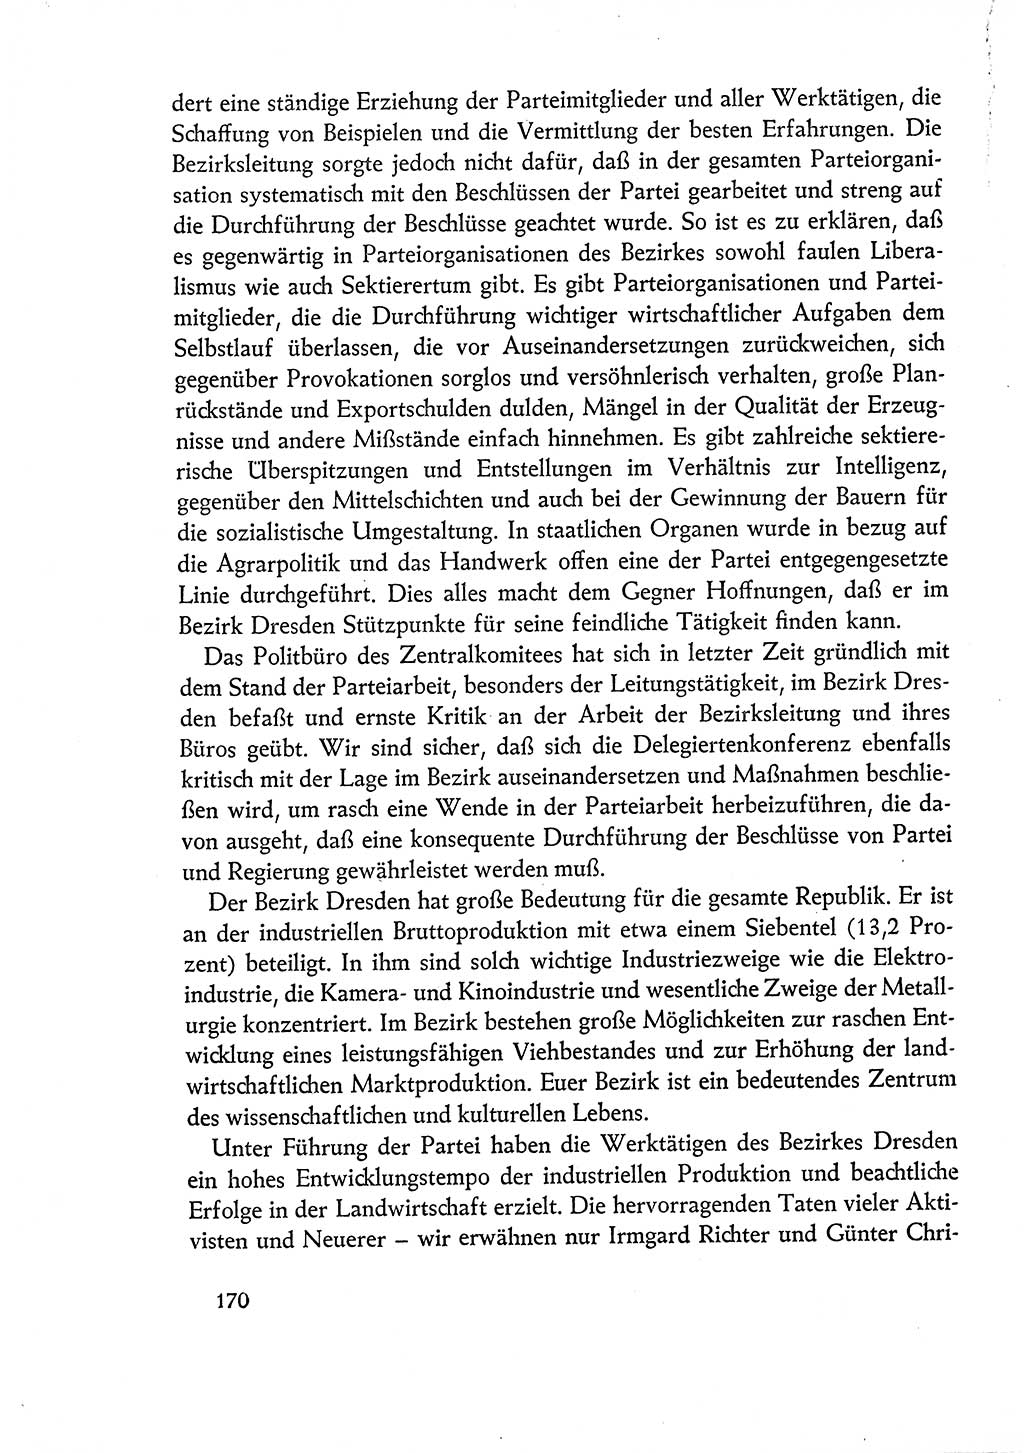 Dokumente der Sozialistischen Einheitspartei Deutschlands (SED) [Deutsche Demokratische Republik (DDR)] 1960-1961, Seite 170 (Dok. SED DDR 1960-1961, S. 170)